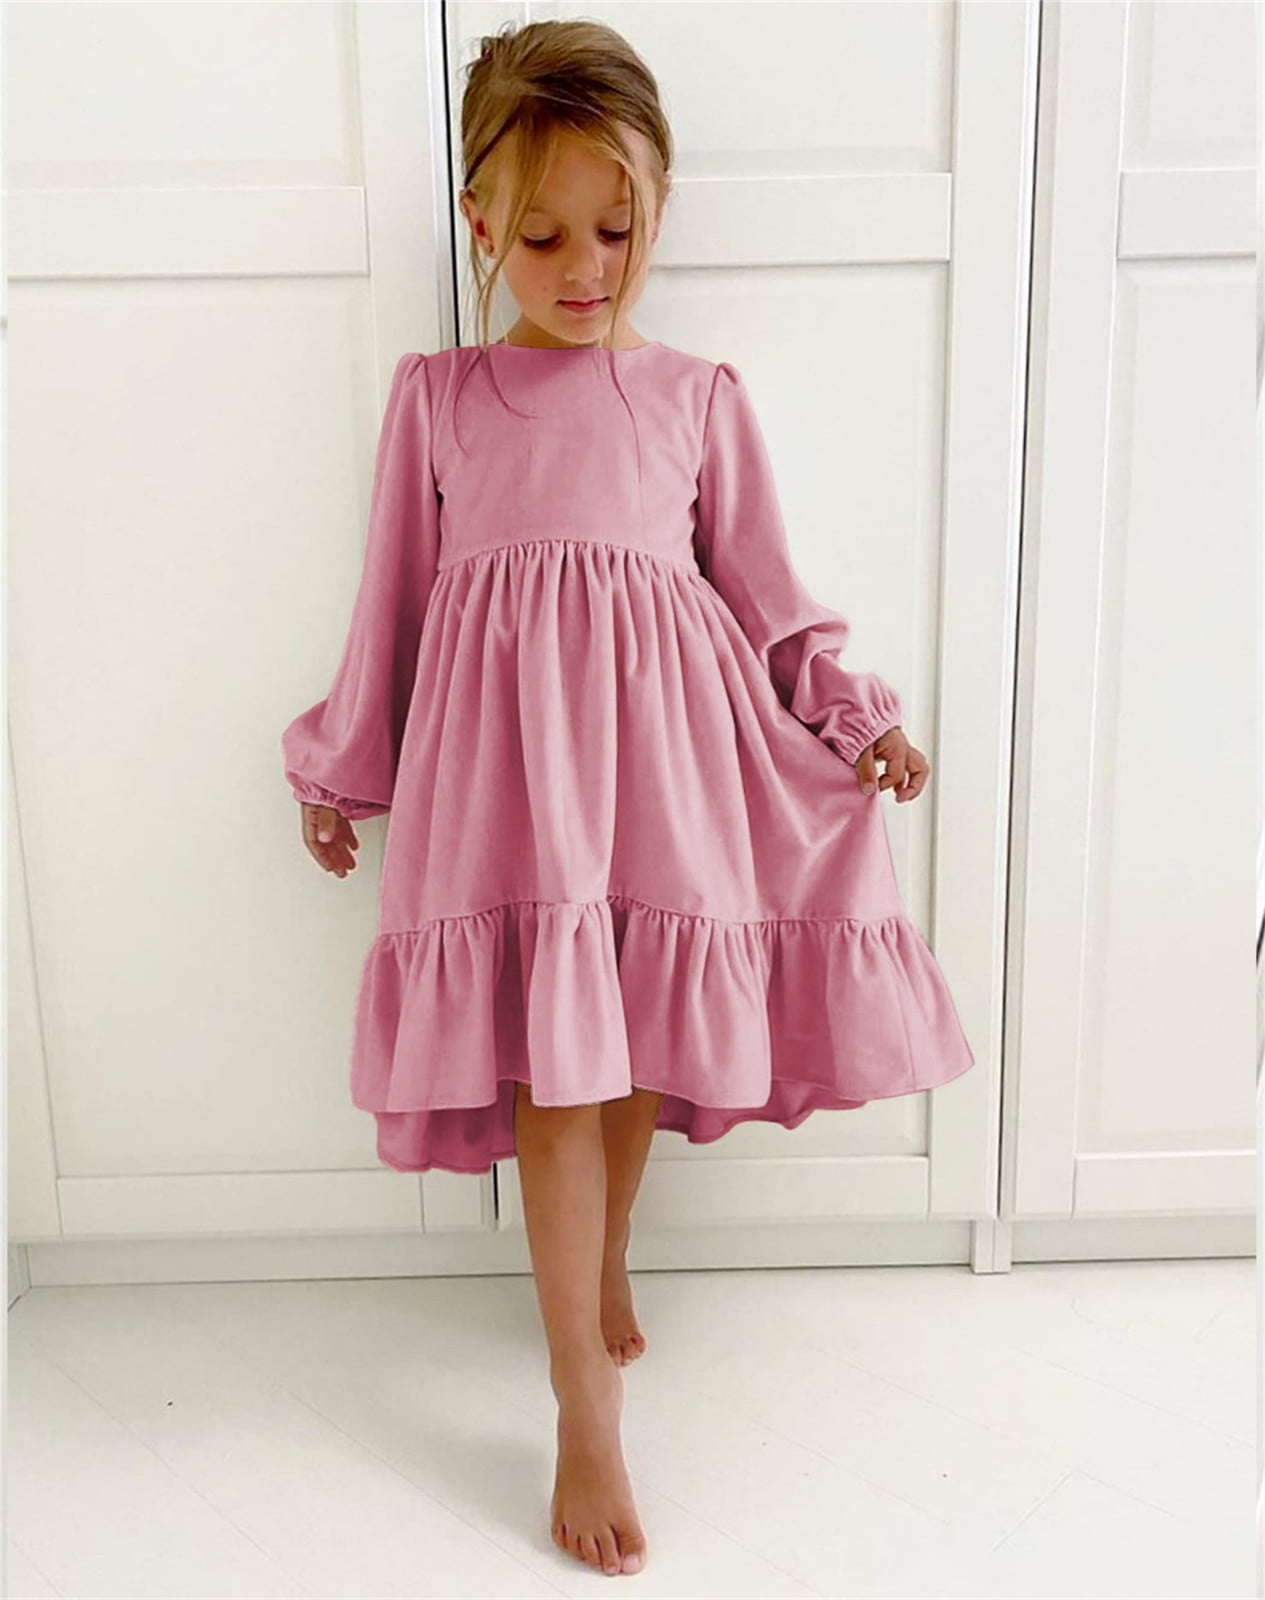 Dollcake Party Winter Dresses for Girls for sale | eBay